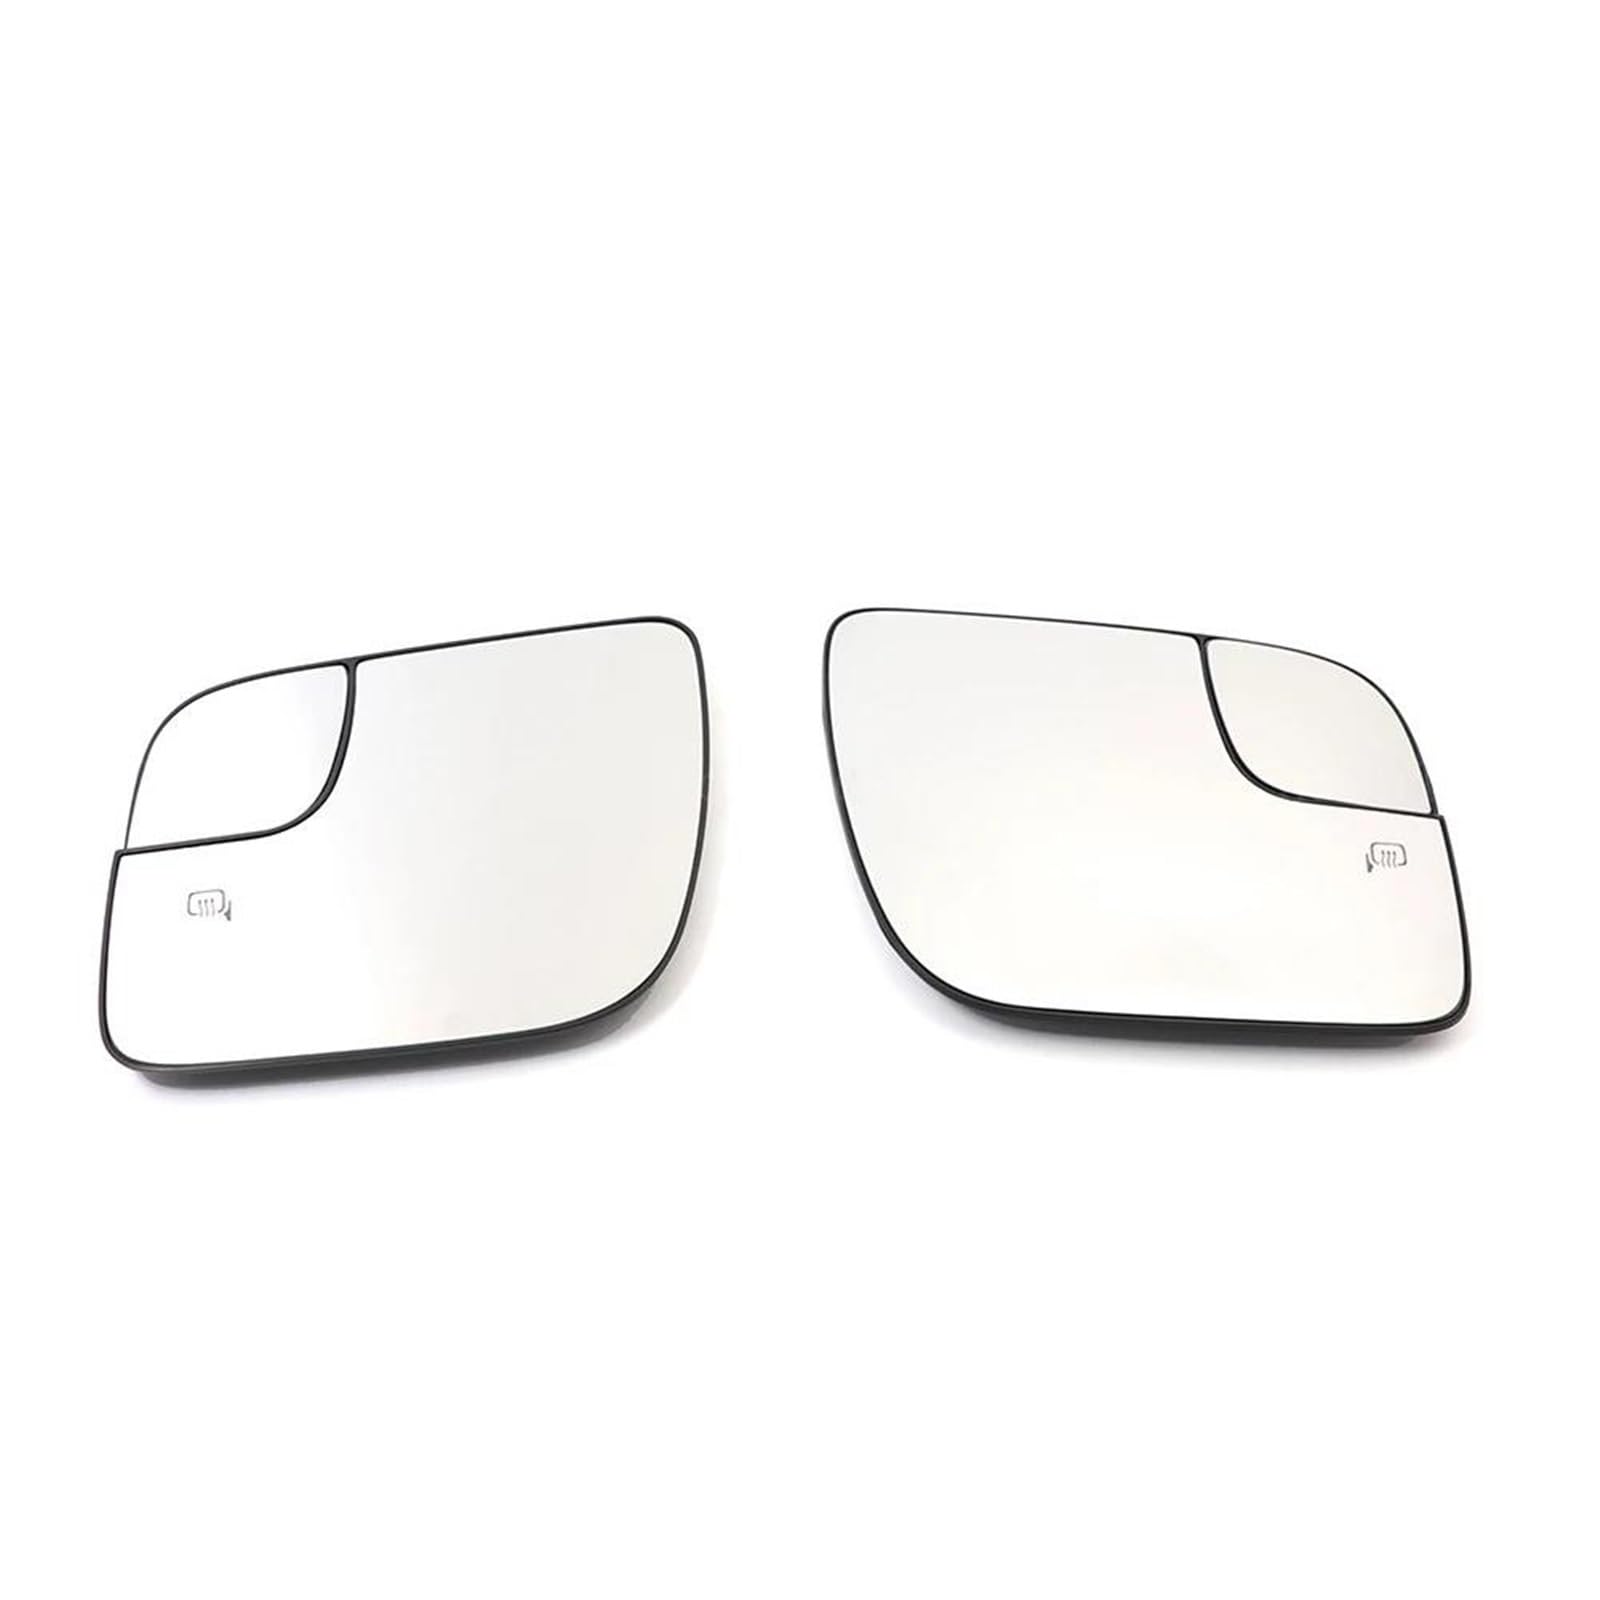 Ultradünne Spiegel Ersatzteile Für Rückspiegelglas Autorückspiegel Beheiztes Rückspiegelglas Für Explorer 2011-2018(Left+Right) von DTSGCX